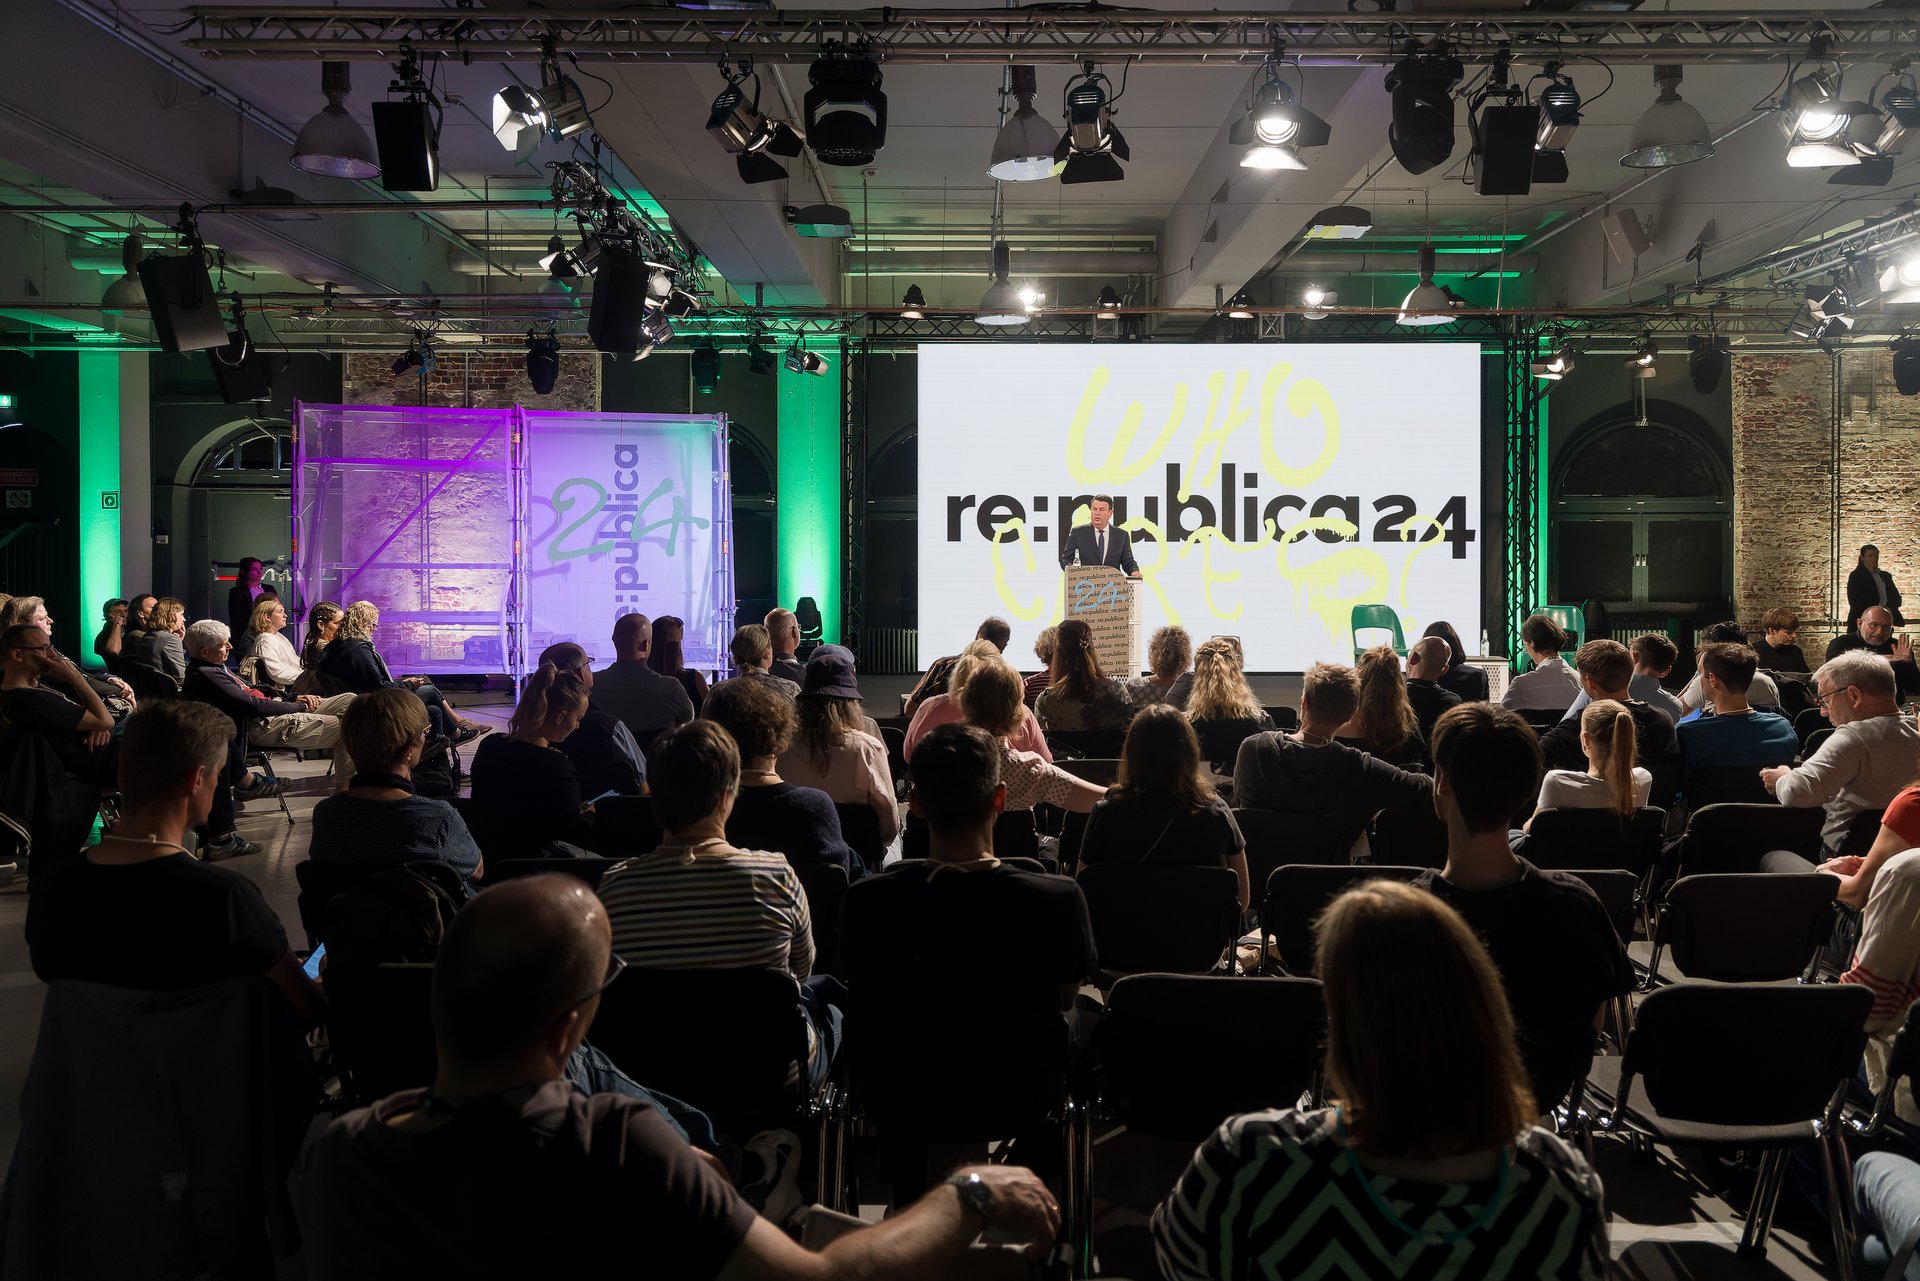 Auf der Bühne der re:publica steht Hubertus Heil hinter einem Sprechpult. Mehrere Menschen sitzen im Publikum und schauen zur Bühne. Auf dem Bühnenhintergrund steht: „Who cares? – re:publica 24“. 